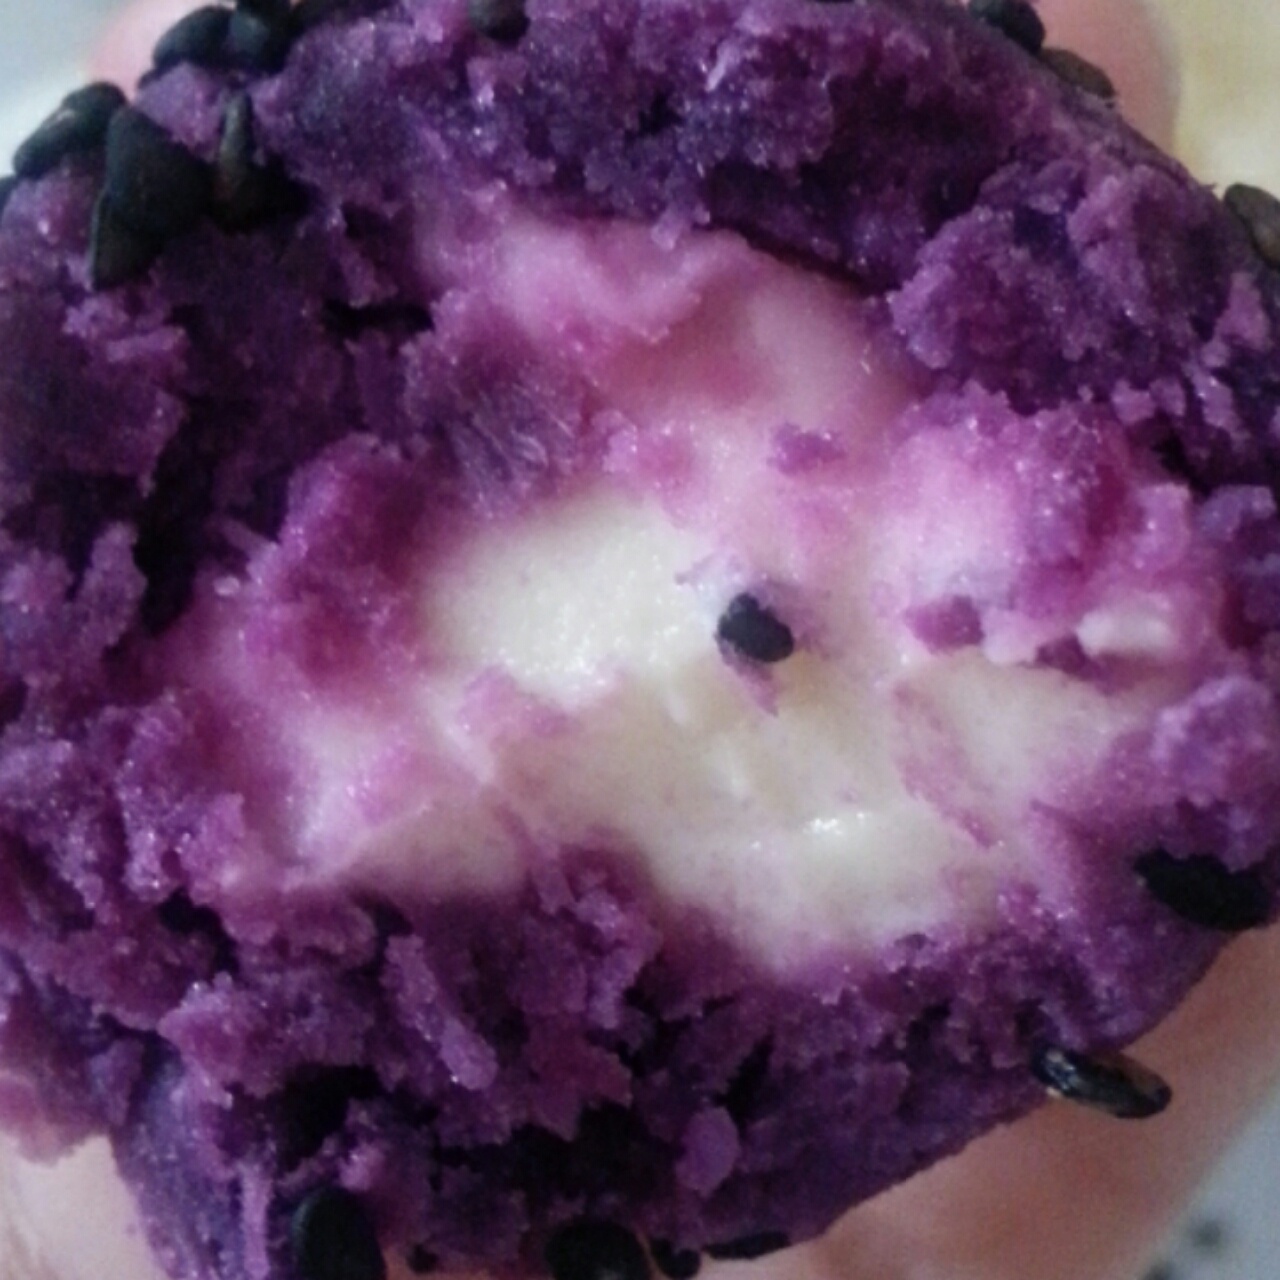 紫薯芝士球